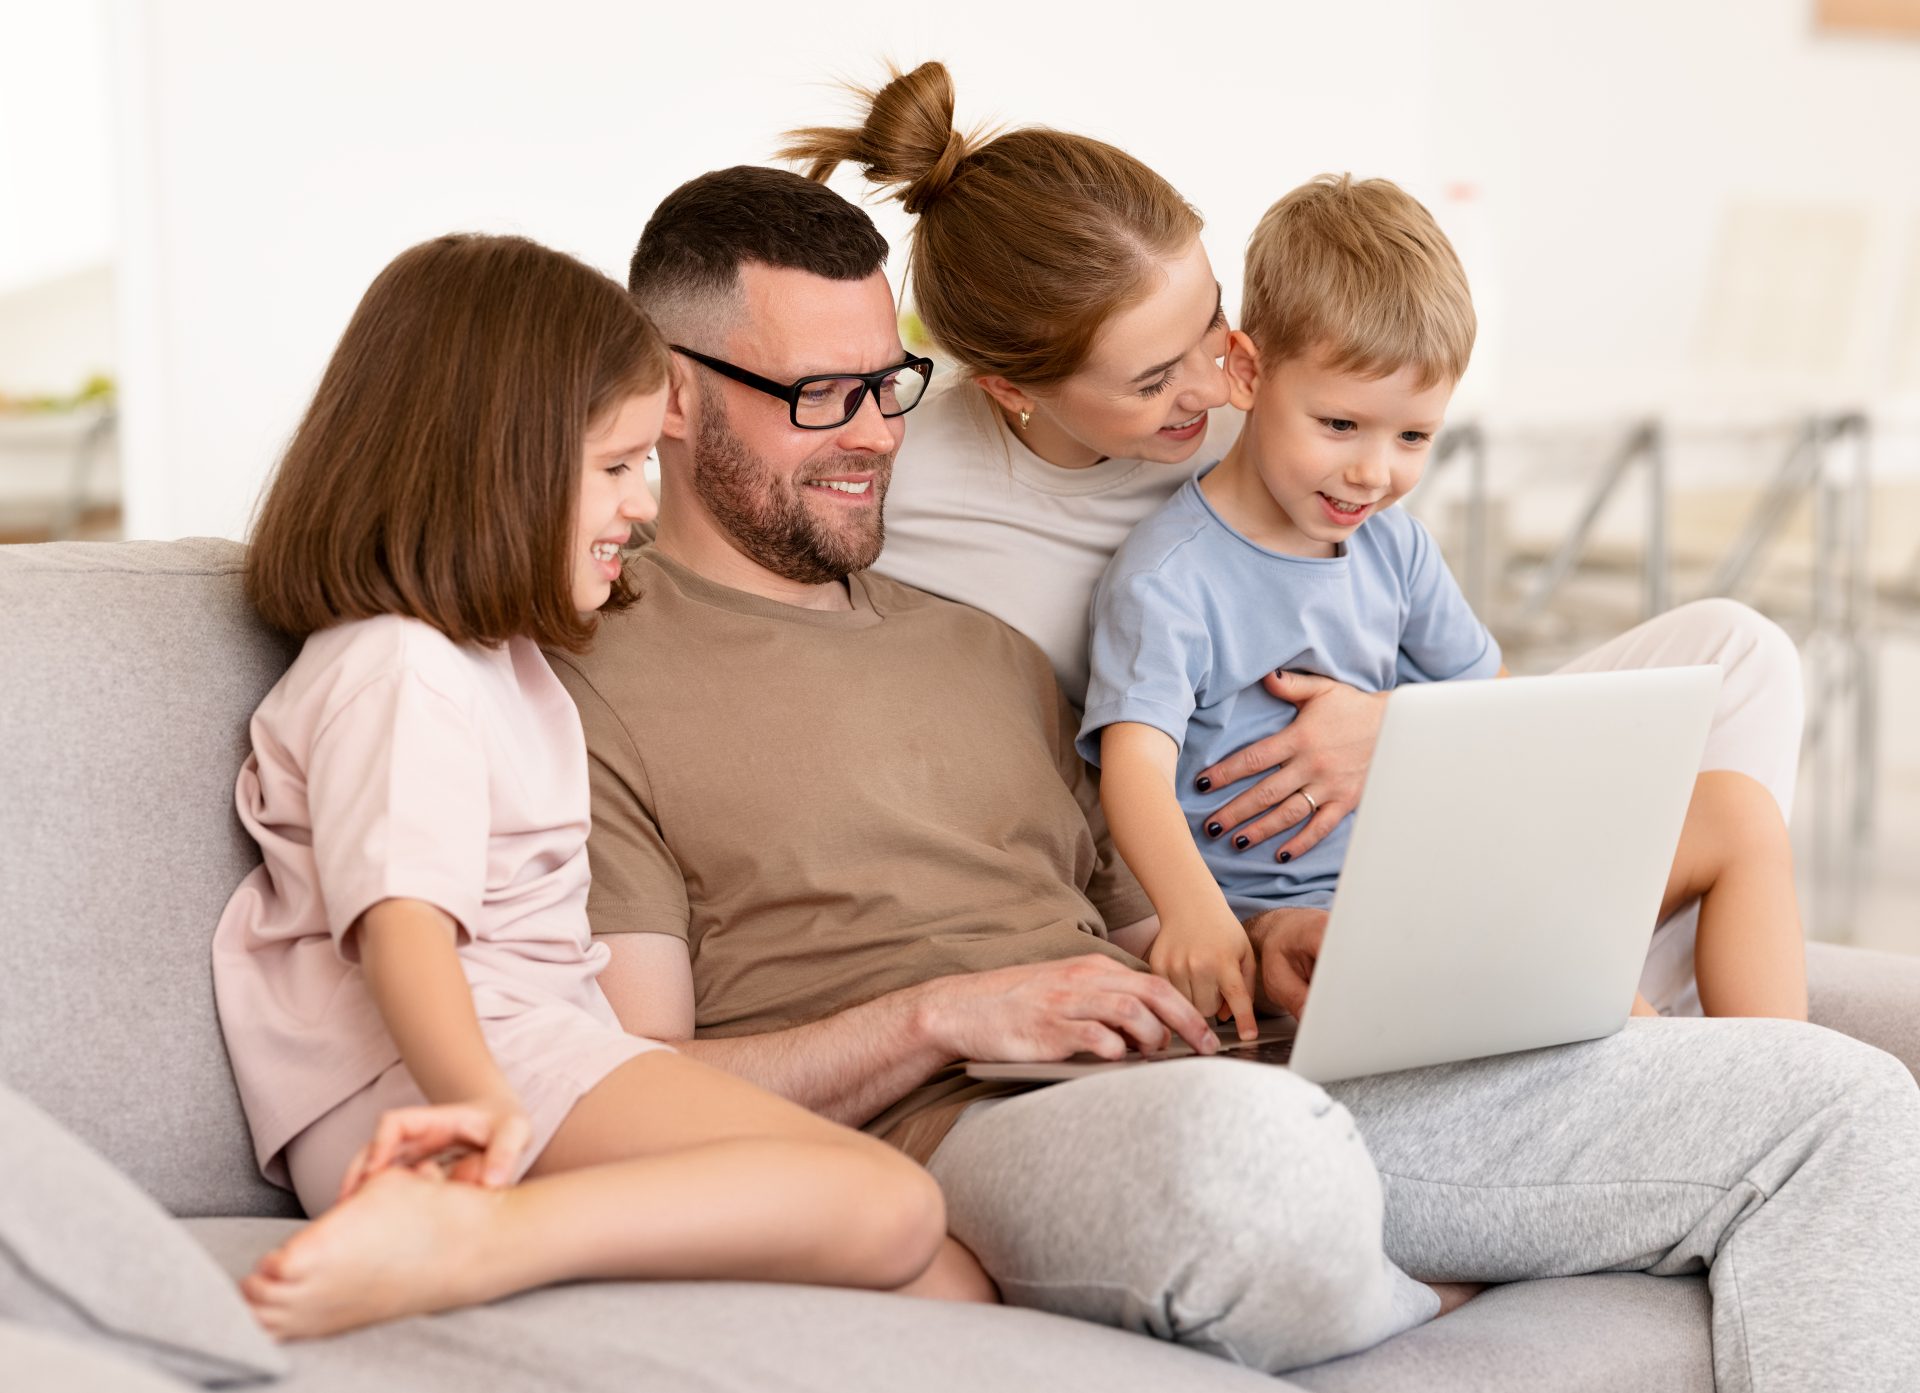 Digitálna dohoda vo vašej rodine posilní zdravé návyky